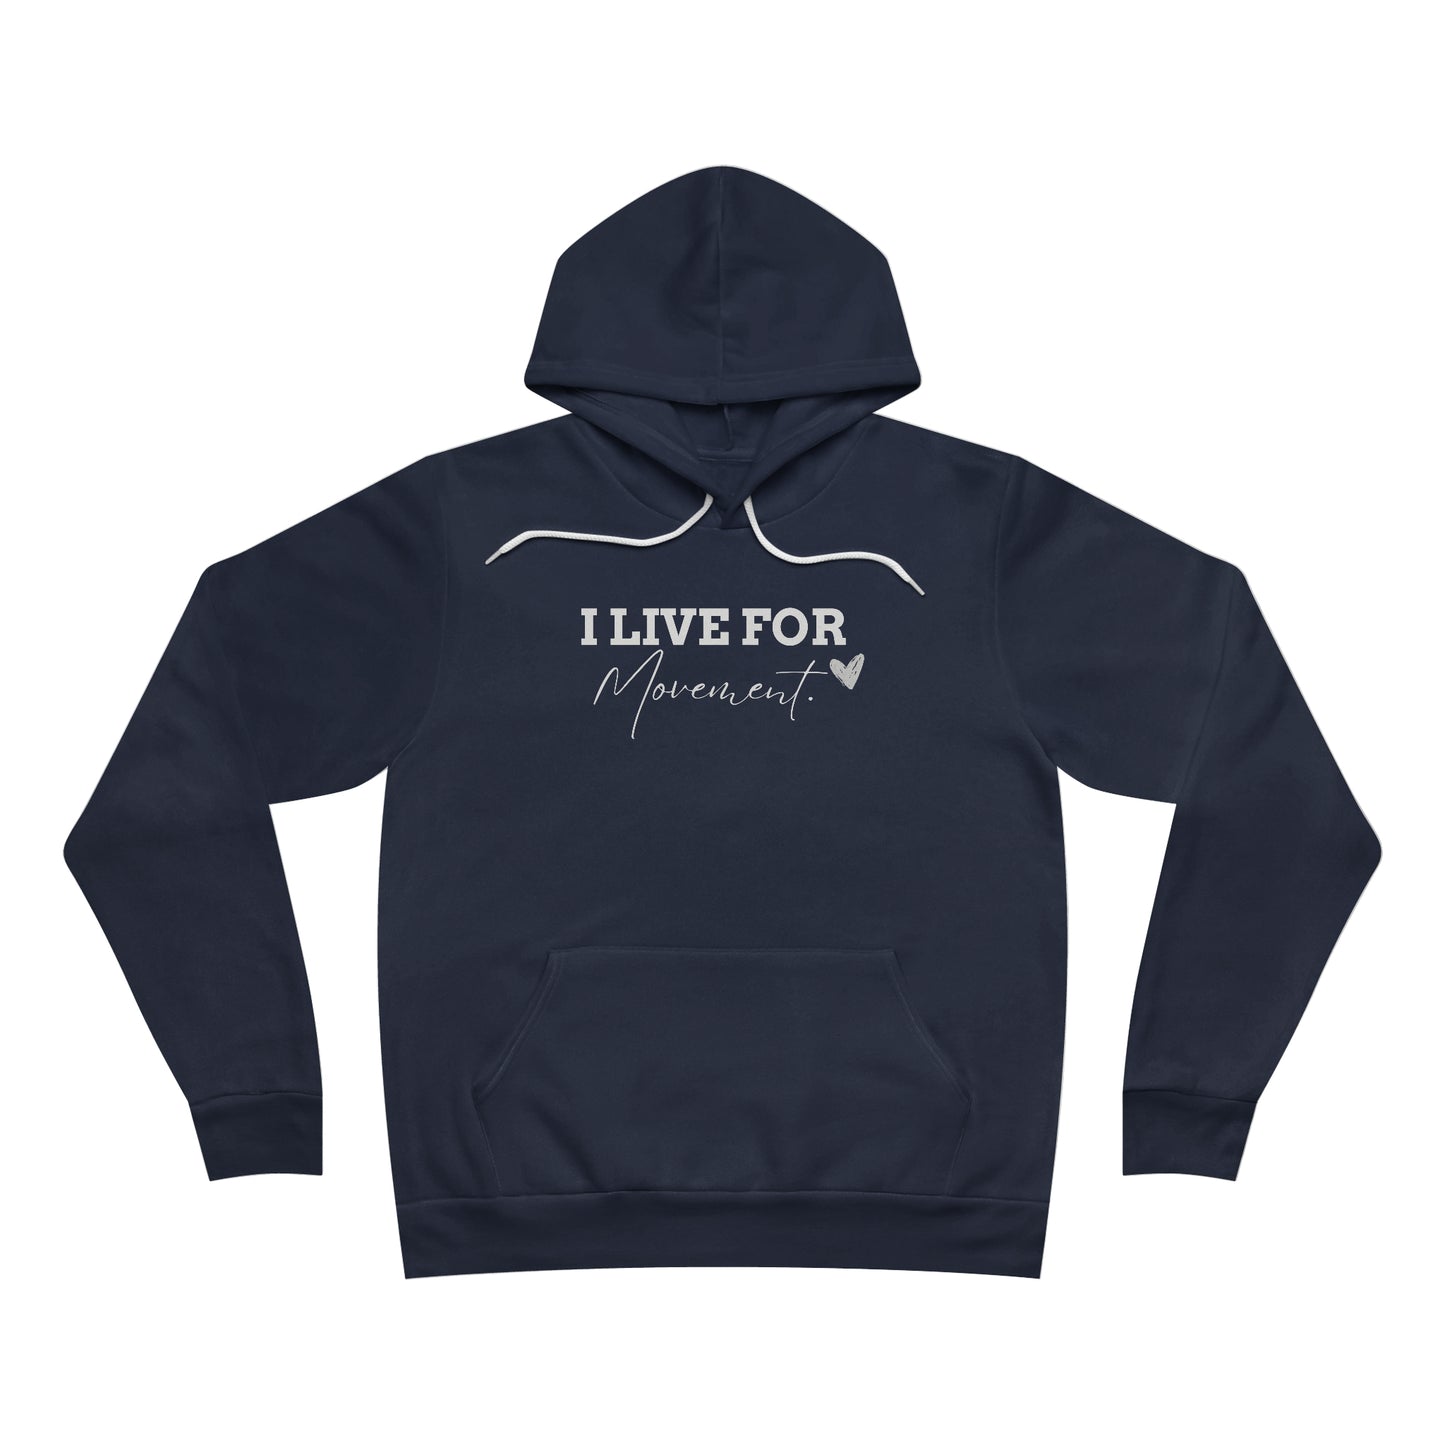 Dance fleece pullover hoodie| gift for dancer for cheer friend| comfy cozy sweatshirt for dancers